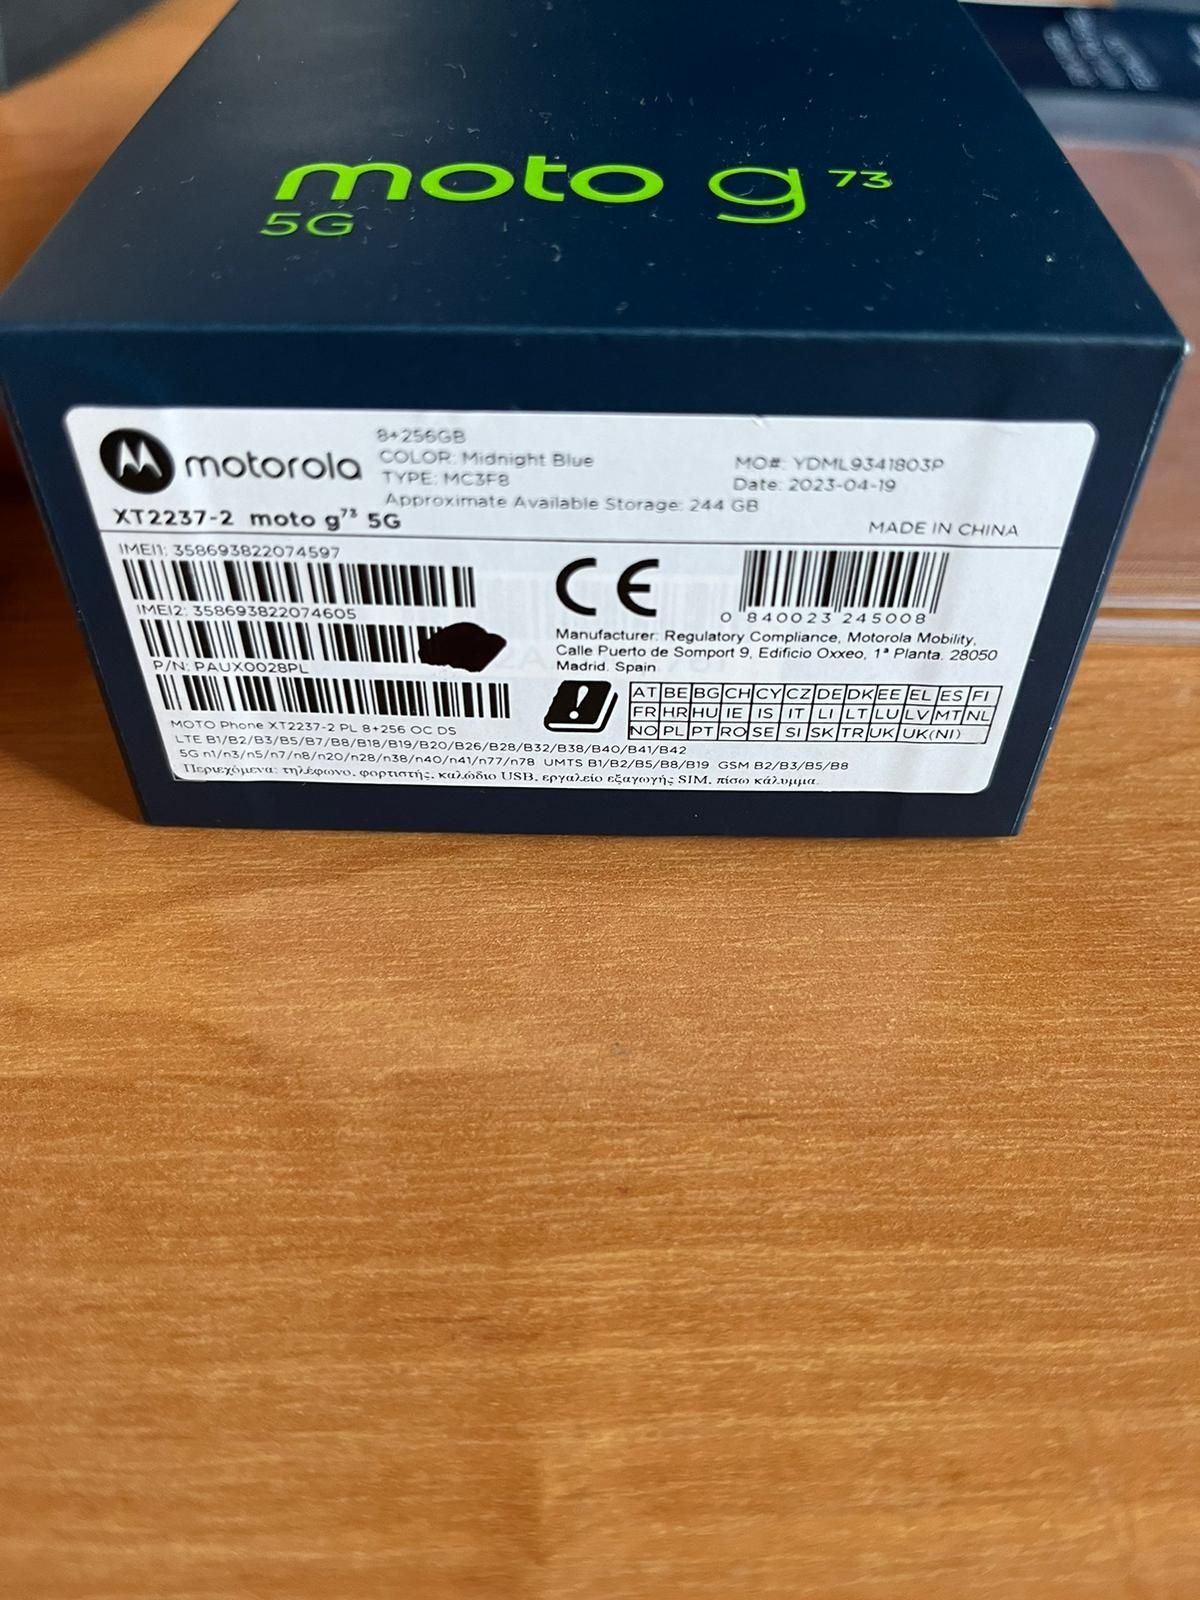 Motorola moto g73 5G 244 GB